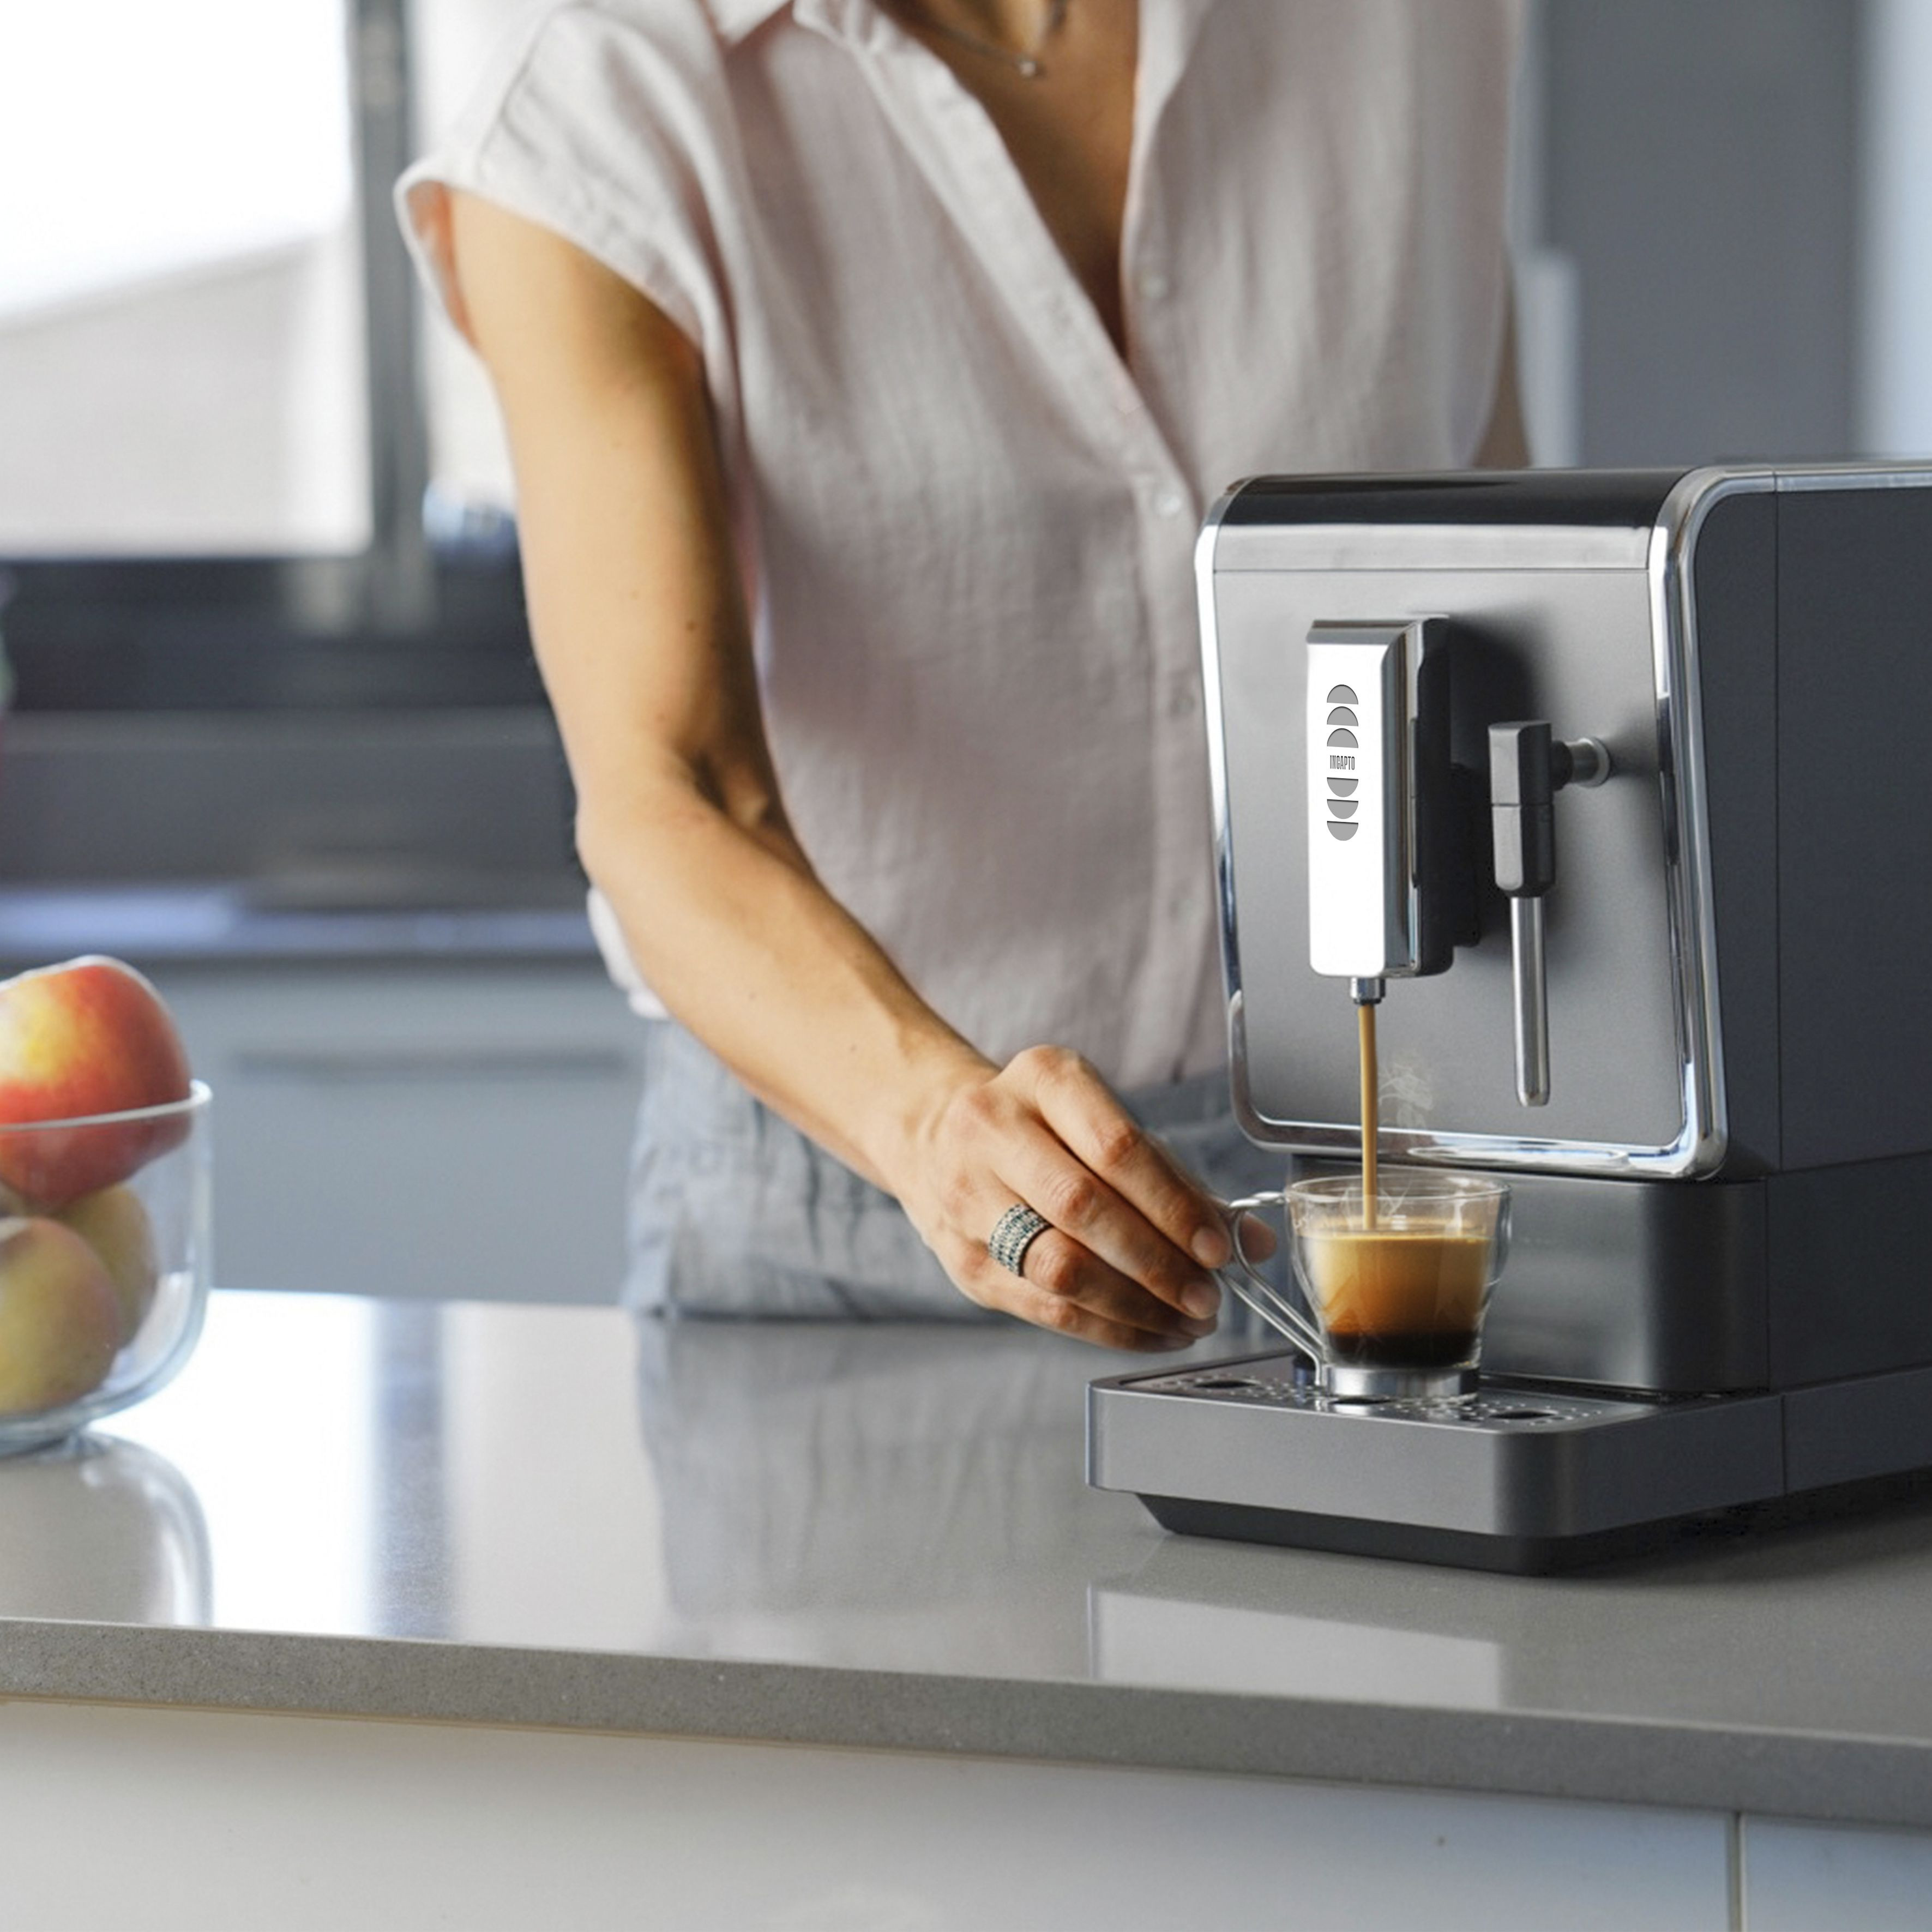 Incapto Coffee - ✨ NOVEDAD INCAPTO Incapto Coffee , el mejor #CaféEnGrano  apuesta por el líder en tecnología de #cafeteras superautomáticas de jura.  🤩 Os presentamos el nuevo modelo de cafetera #Jura